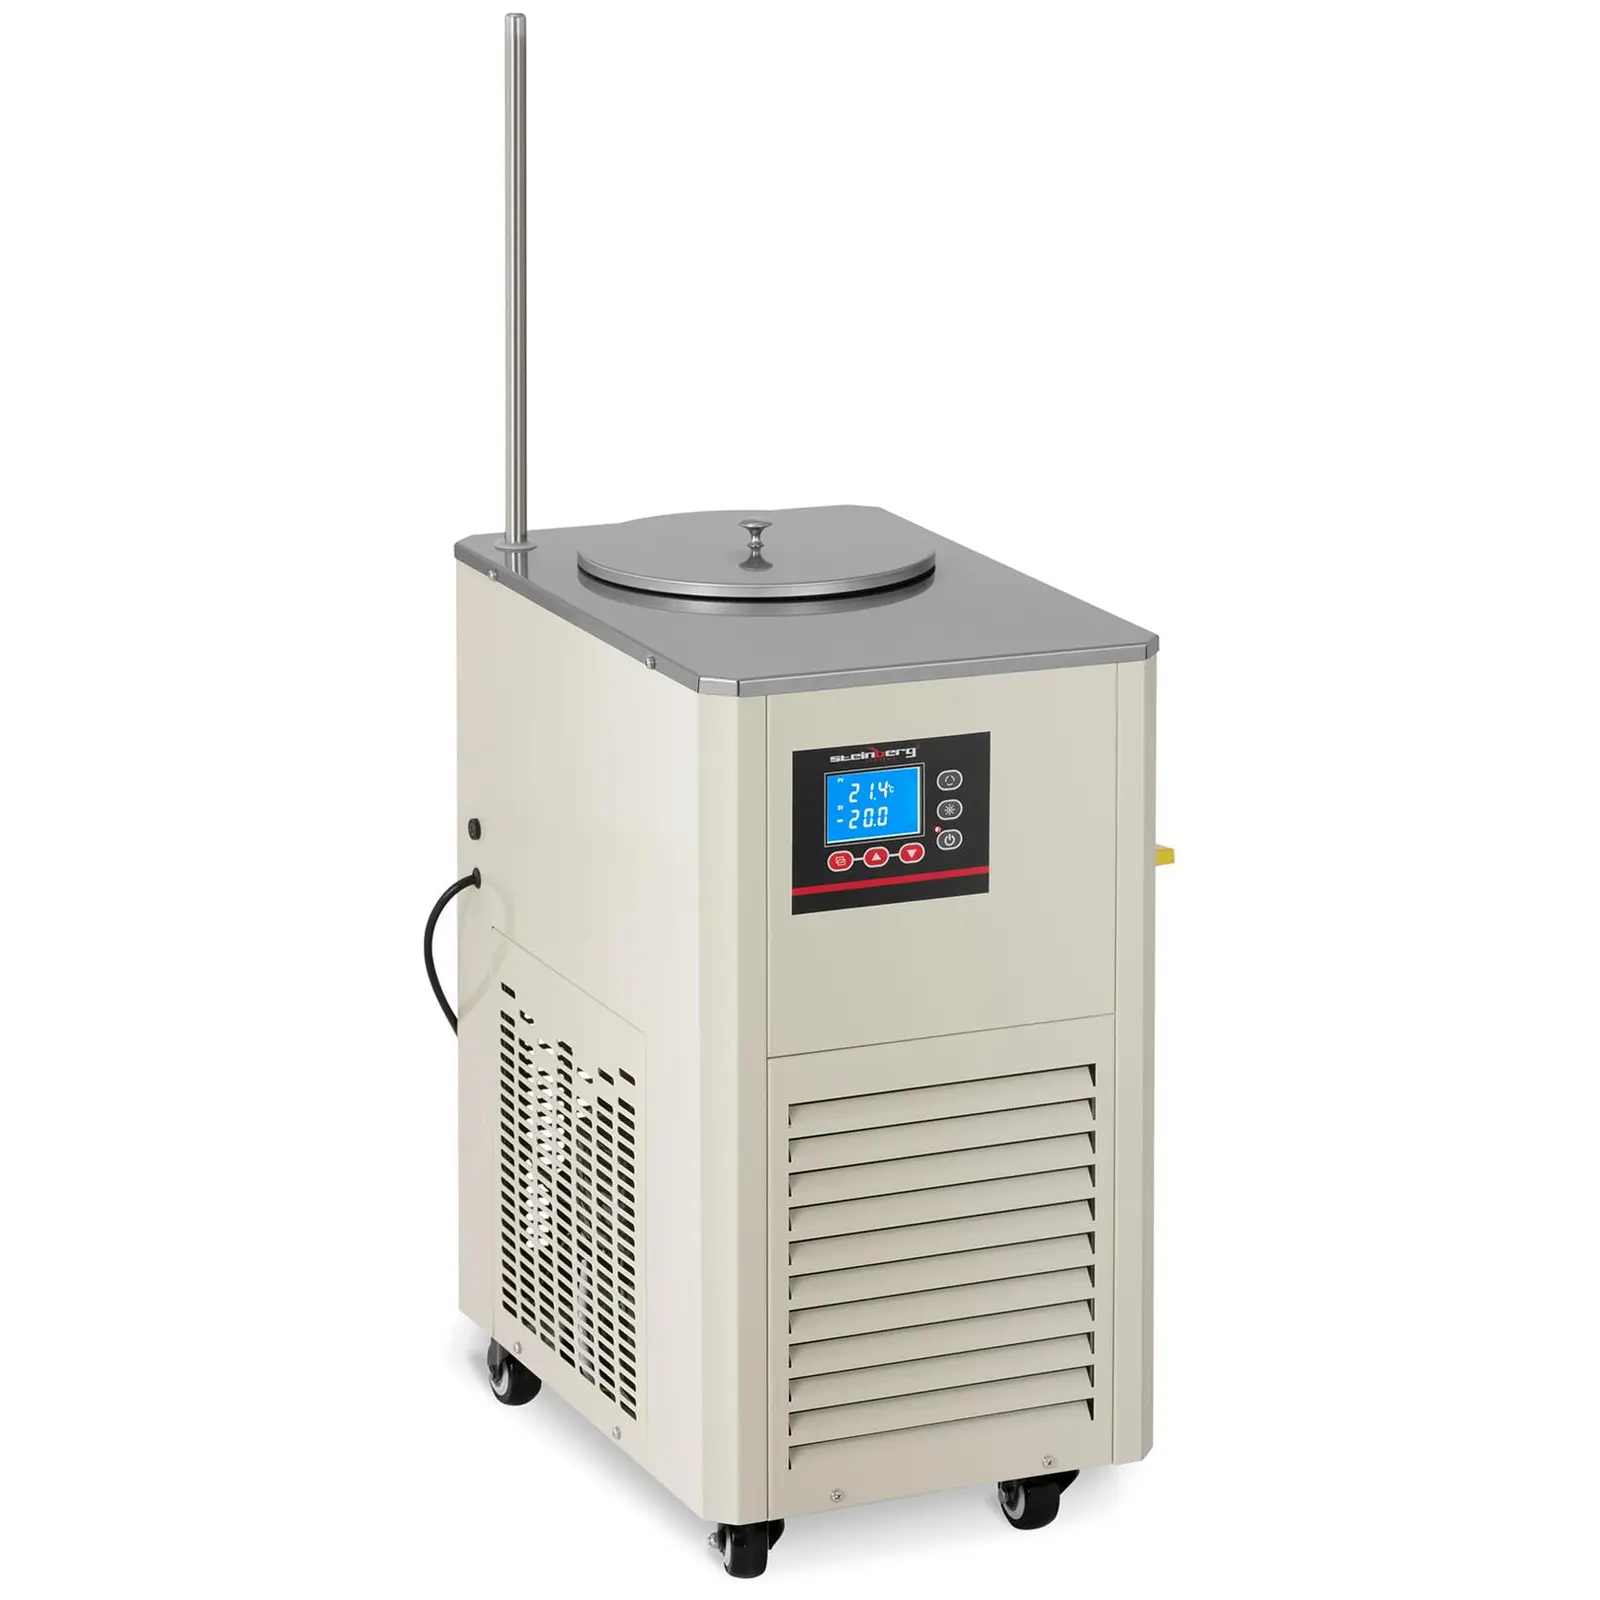 Umlaufkühler - Kompressor: 726 W - -20 - 20 ℃ - 20 L/min